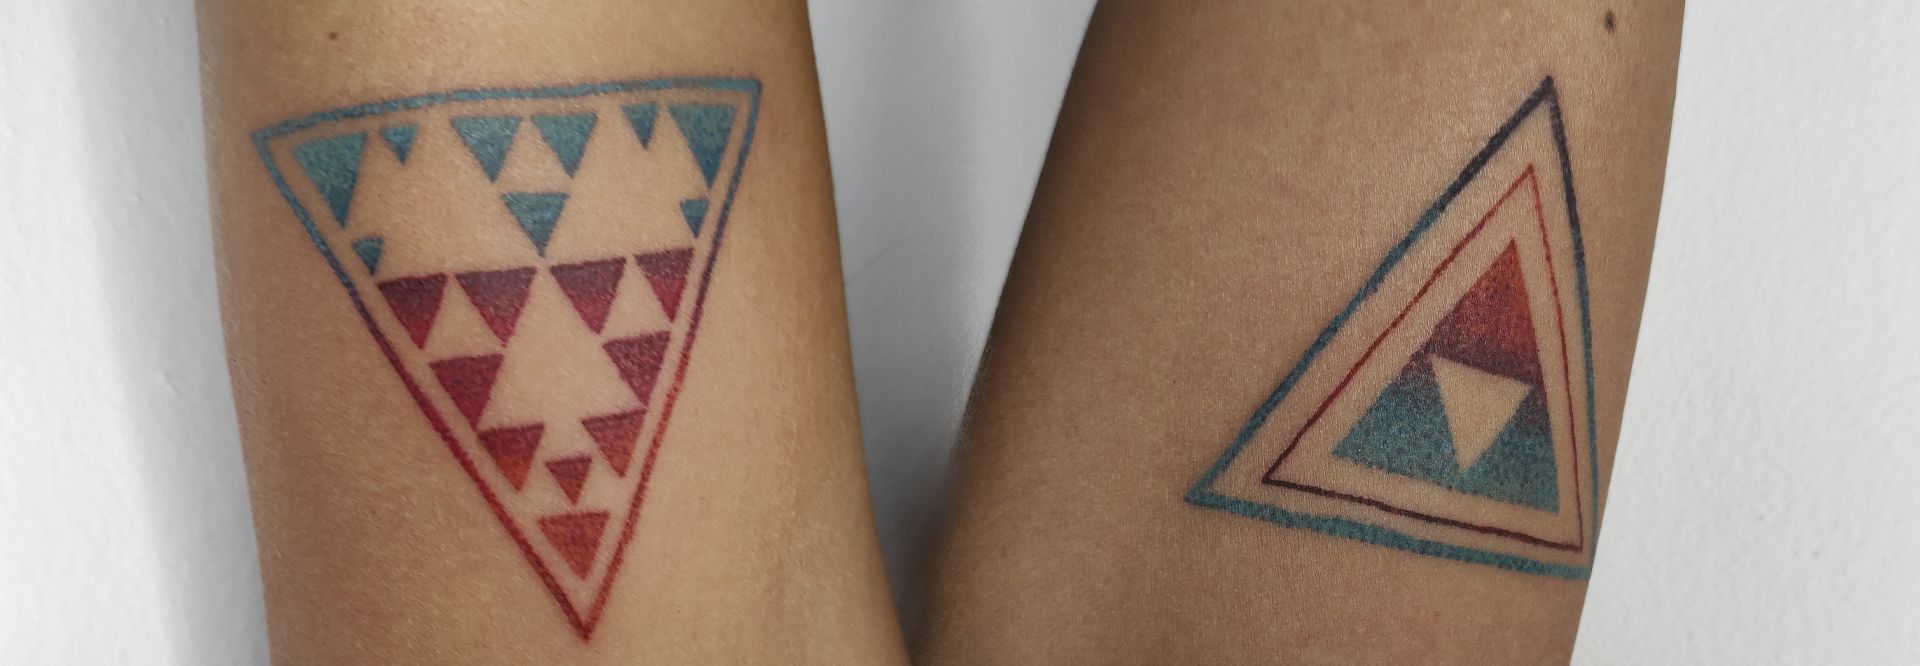 Guanche runes. Lanzarote art in a tattoo